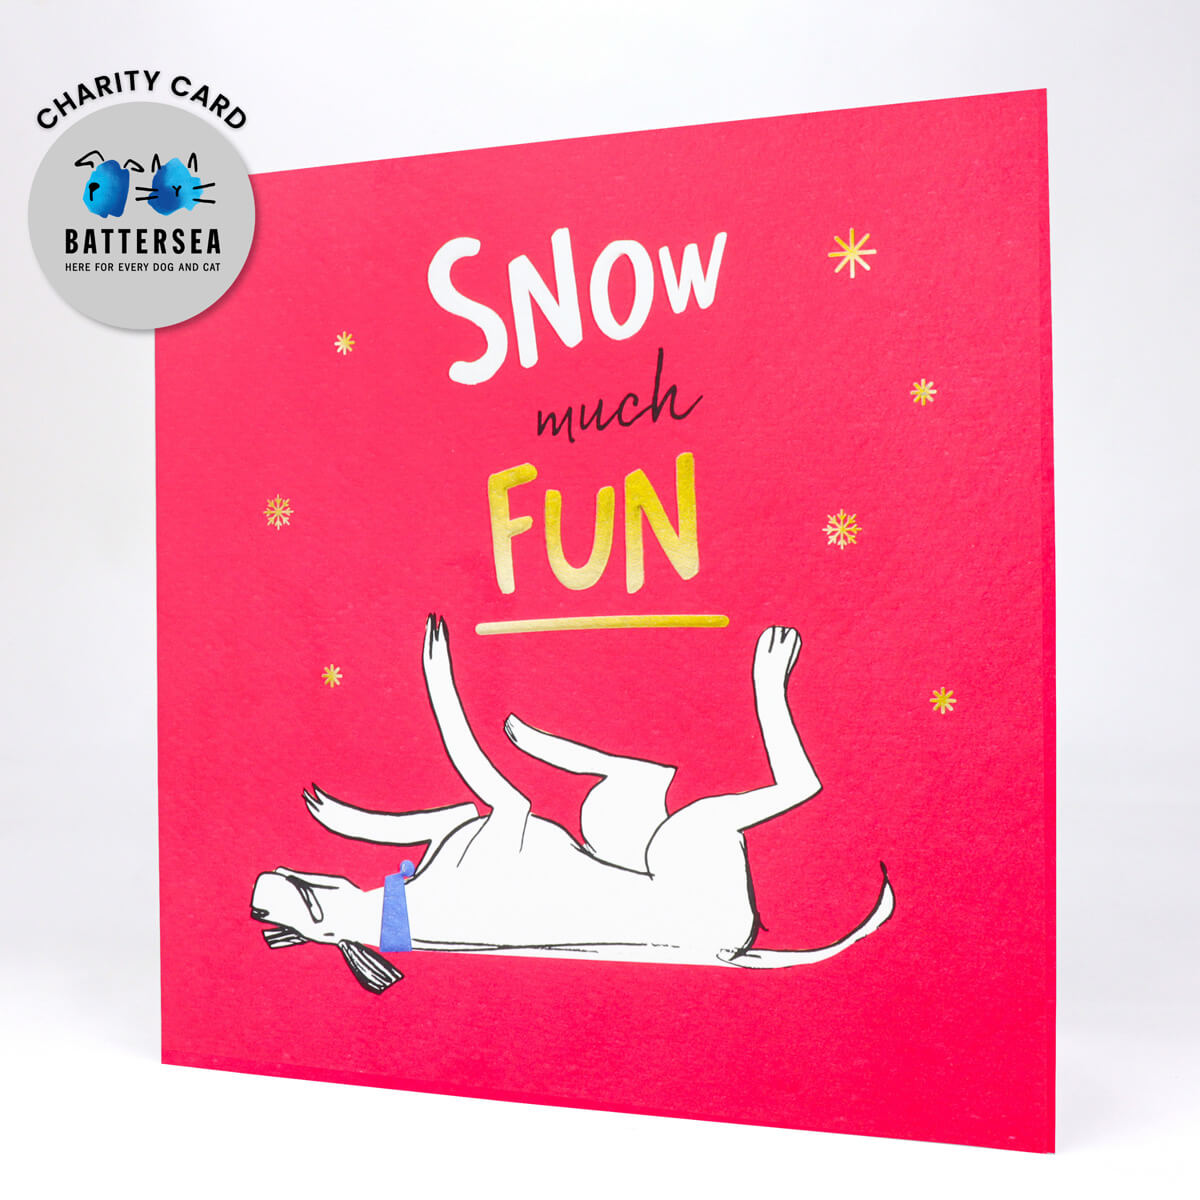 Snow Much Fun Card